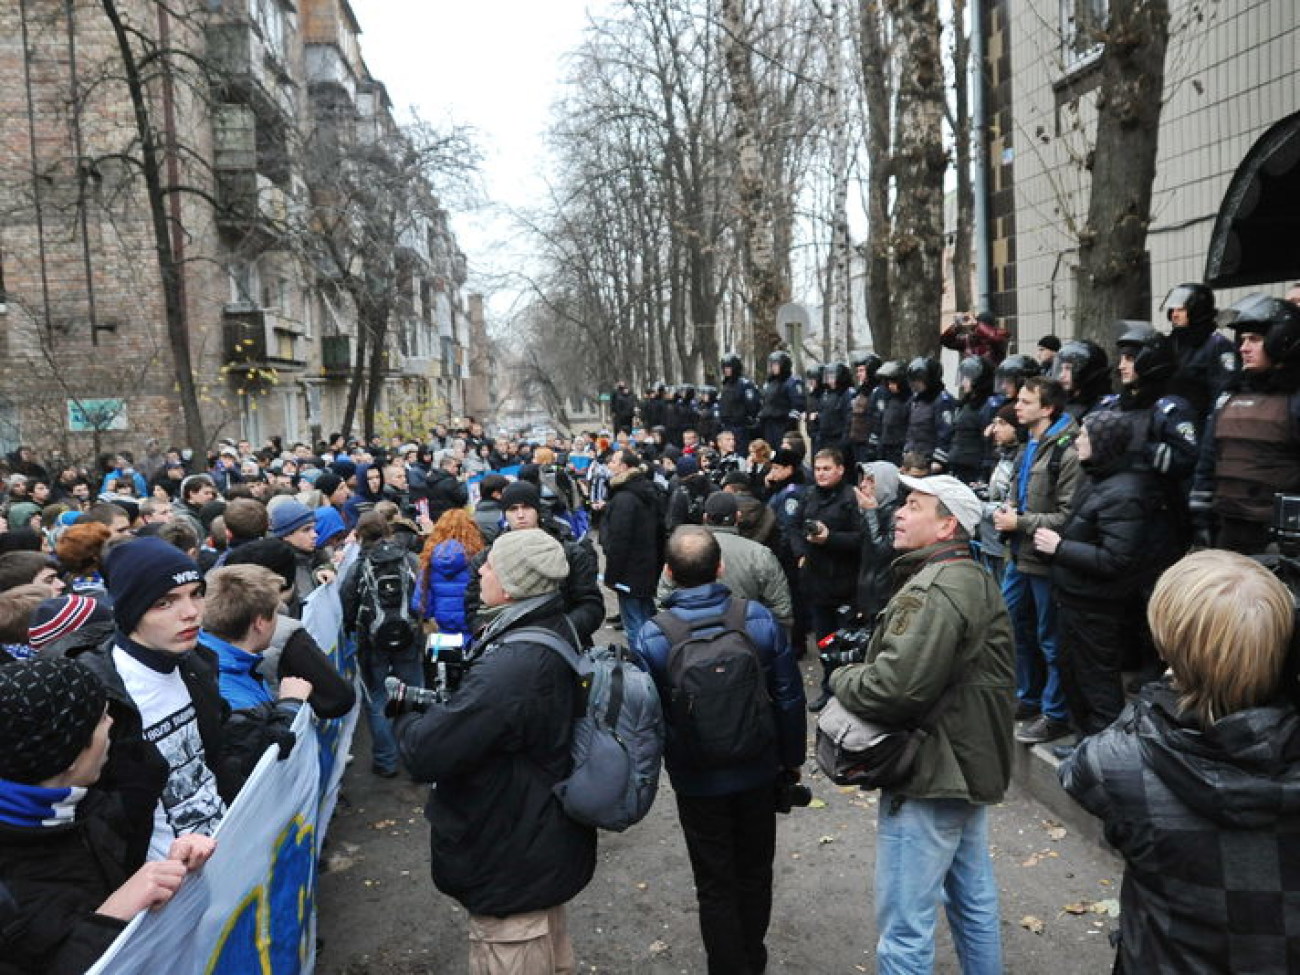 Футбольные болельщики прошлись Маршем в защиту семьи Павличенко, 25 ноября 2012г.